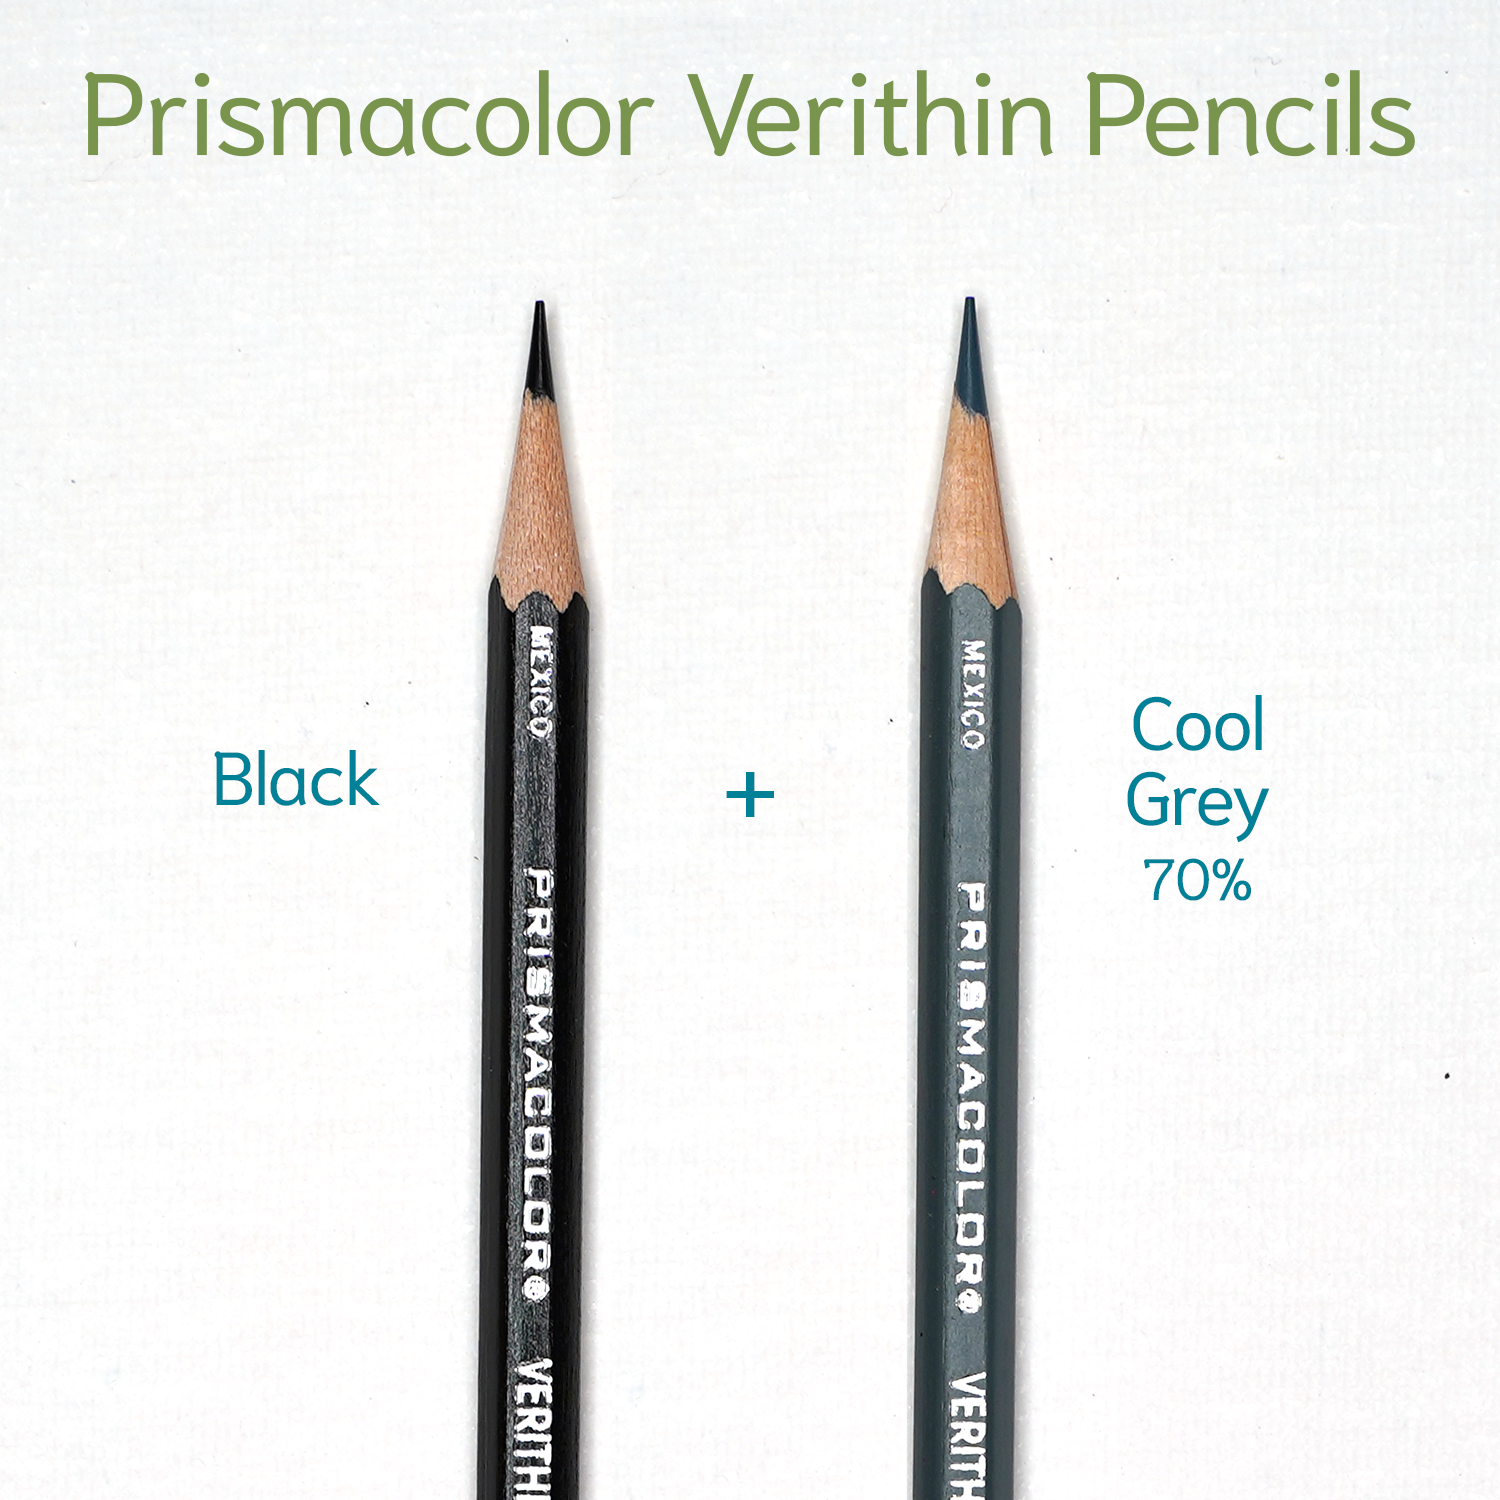 Prismacolor Ebony Pencil Black